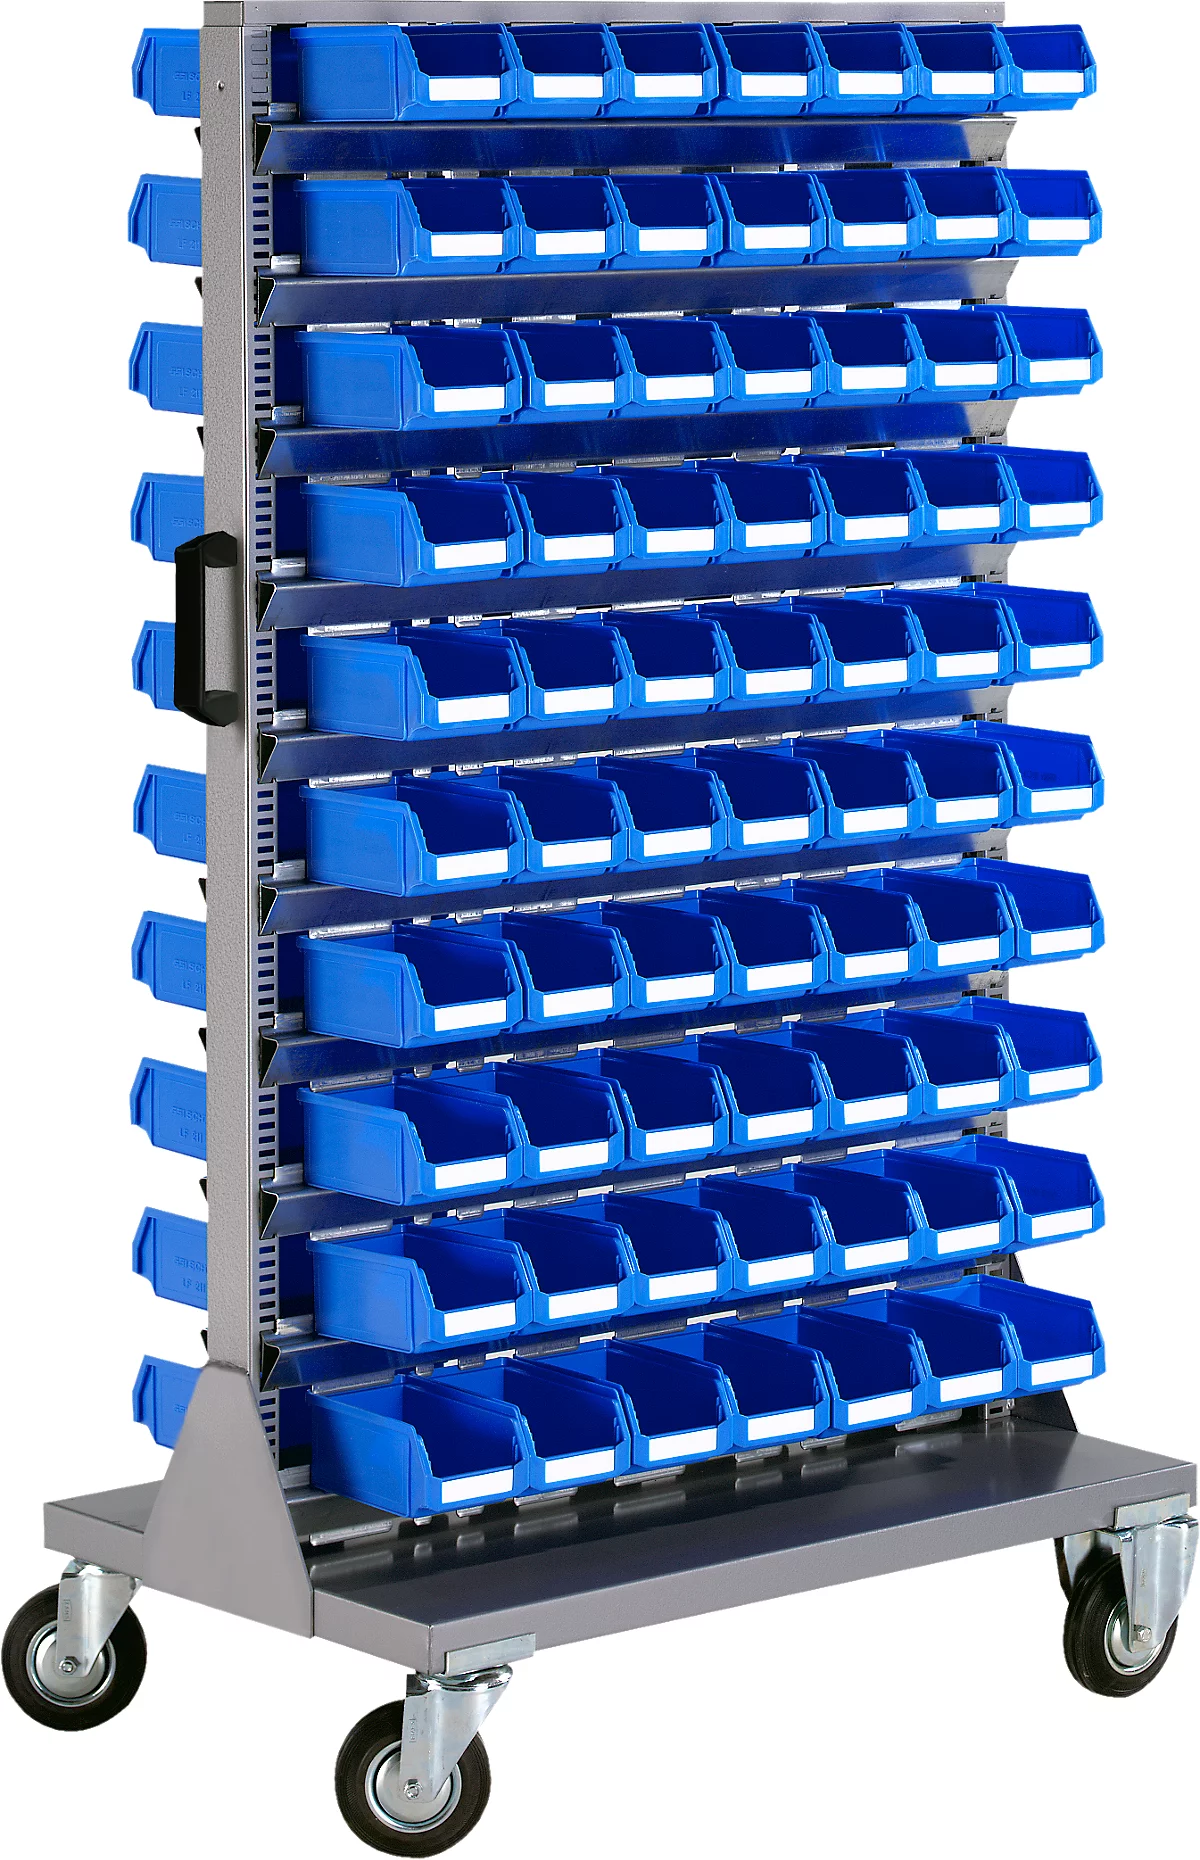 Almacén móvil de piezas pequeñas, apilable por 2 lados, incl. 140 cajones azules de frente abierto LF 211, ancho 825 x fondo 550 x alto 1450 mm, acero, gris